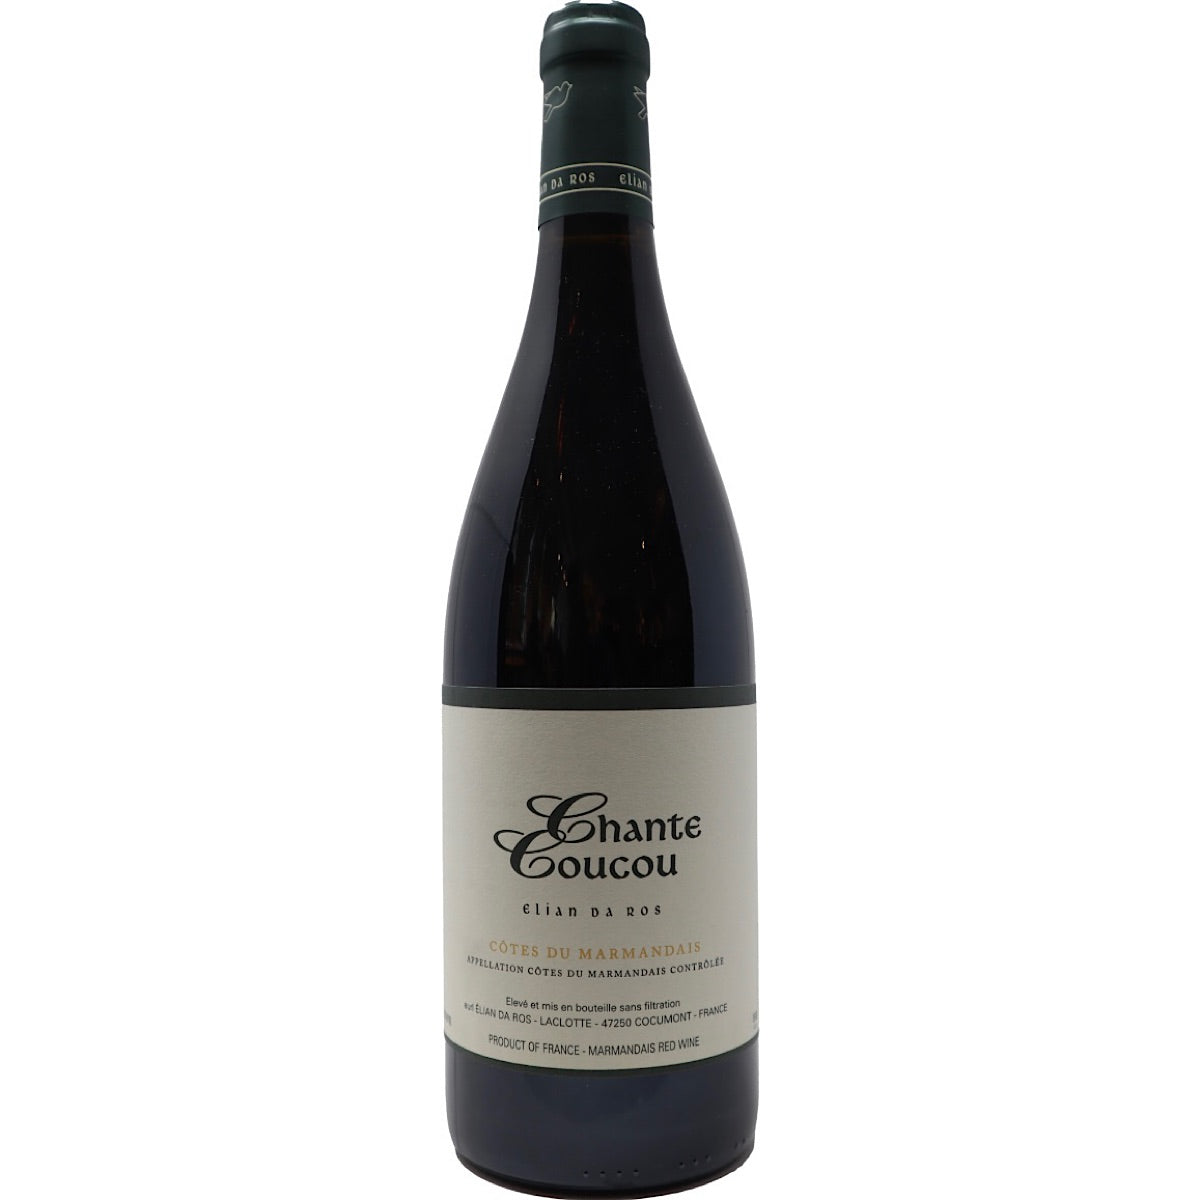 DOMAINE ELIAN DA ROS, Côtes du Marmandais, CHANTE COUCOU ROUGE,  6 Bottle Case 75cl